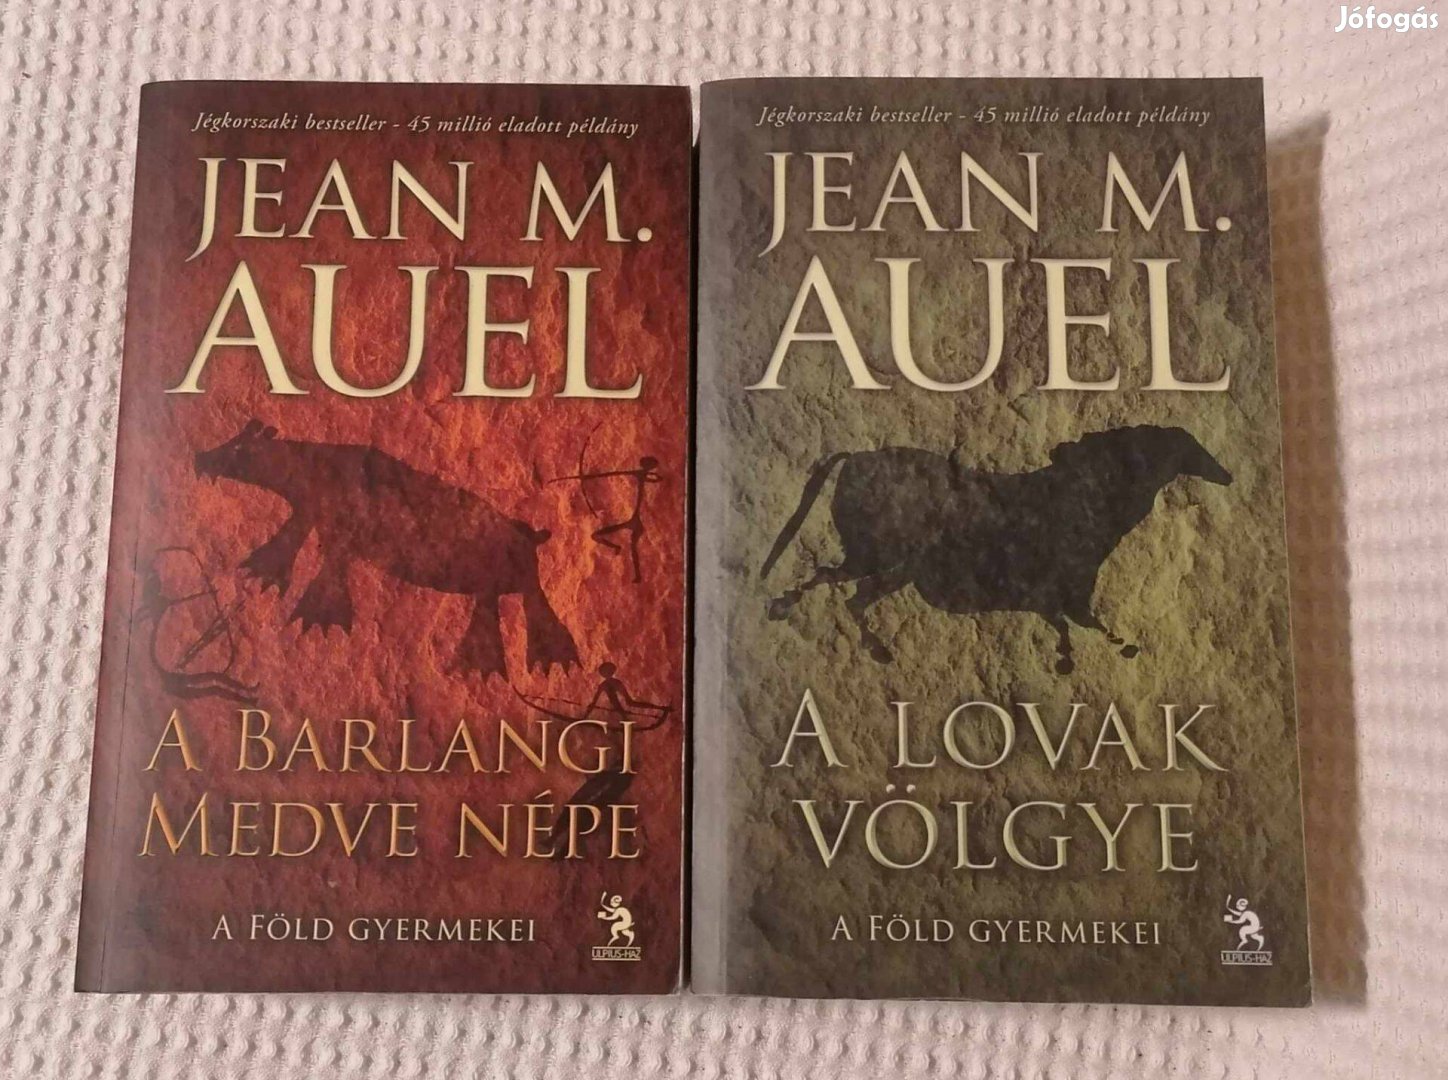 Eladó Jean M. Auel: A lovak völgye + A barlangi medve népe / Könyvek